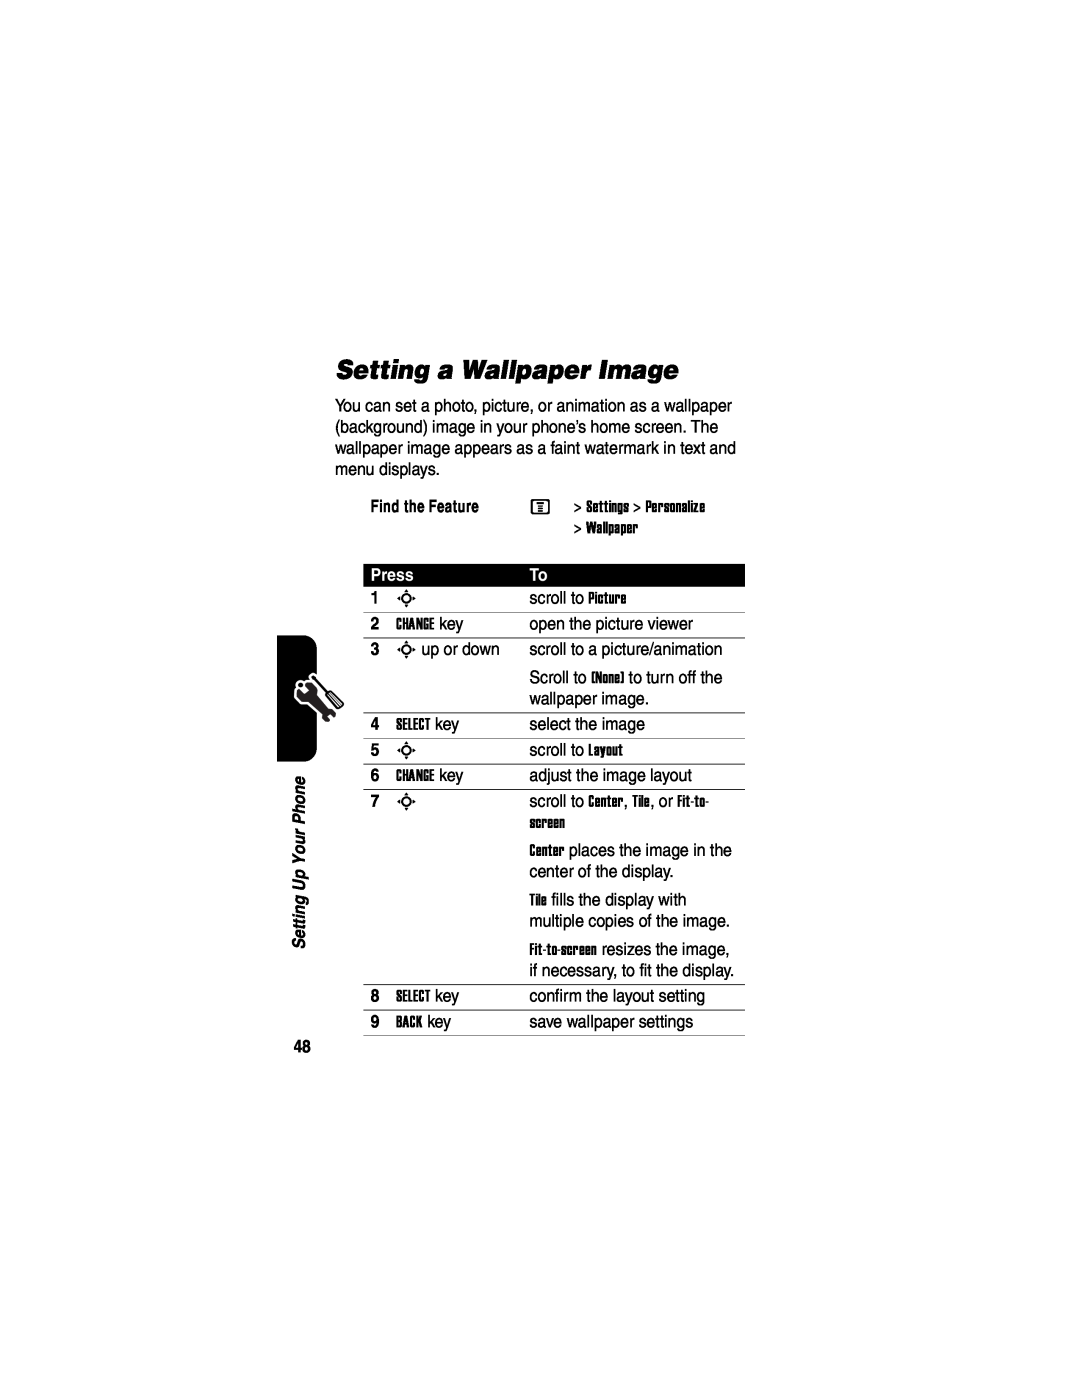 Motorola V551SLVATT manual Setting a Wallpaper Image, Press 